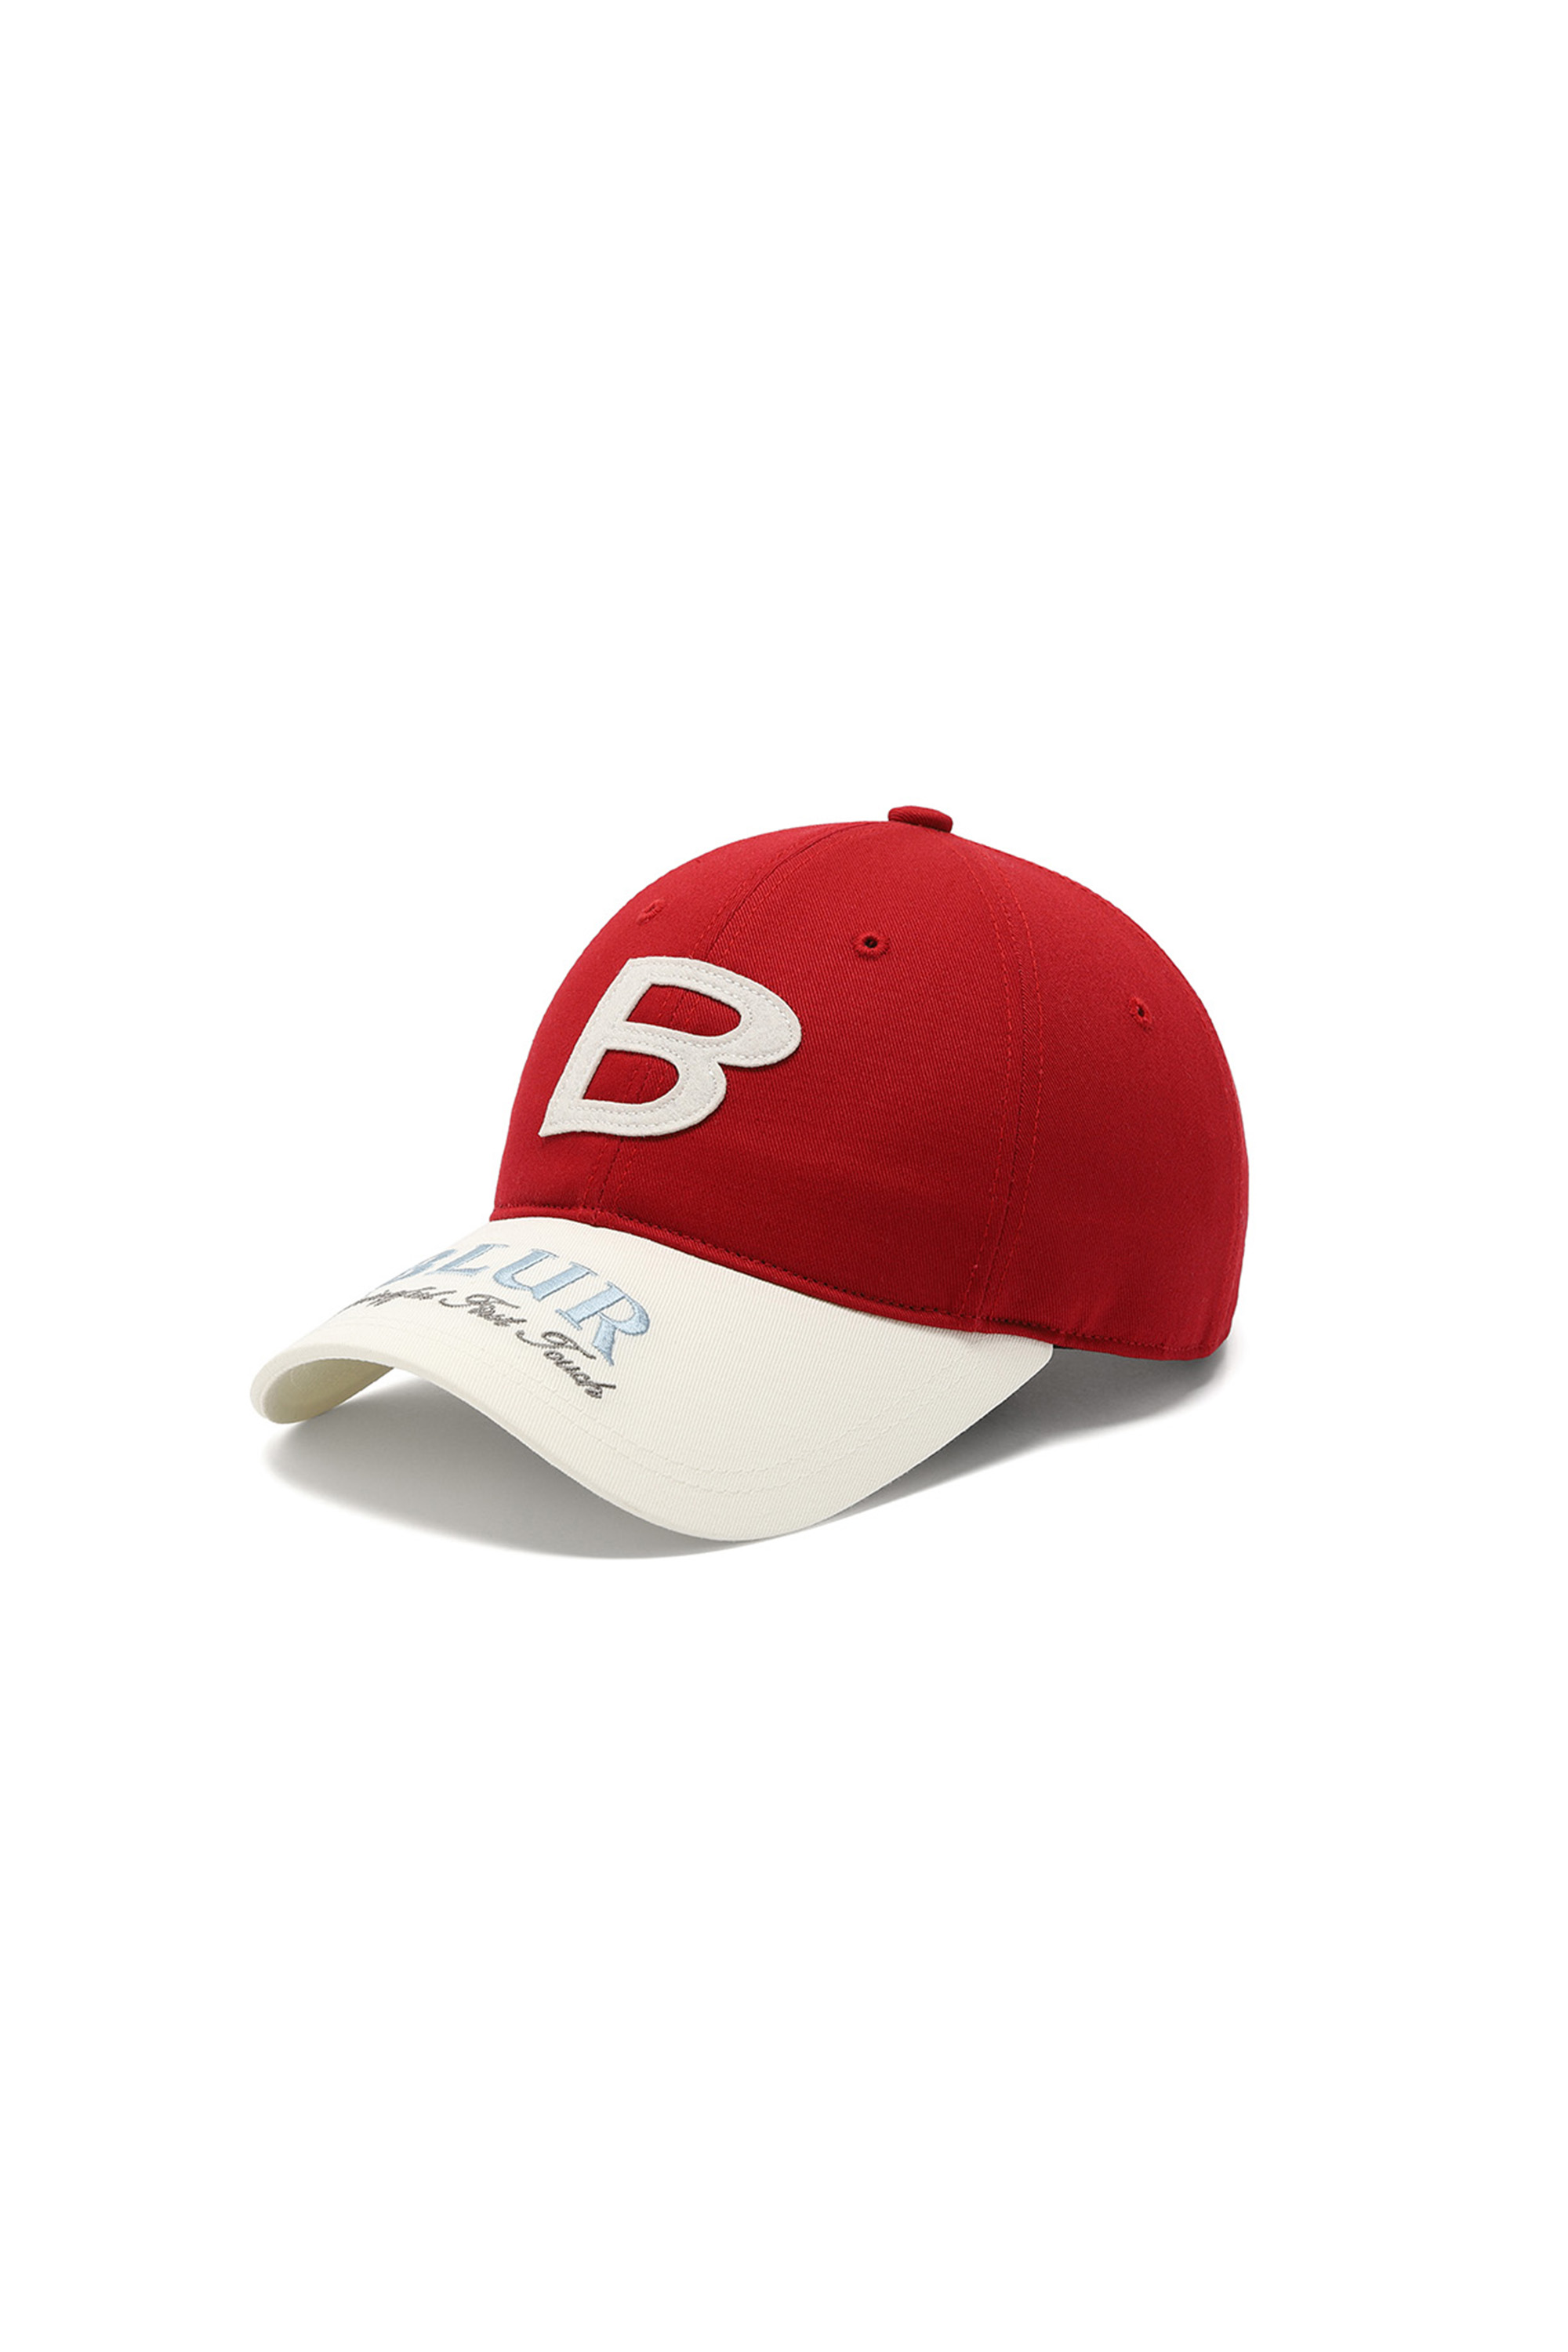 BLUR COMBI CAP - RED